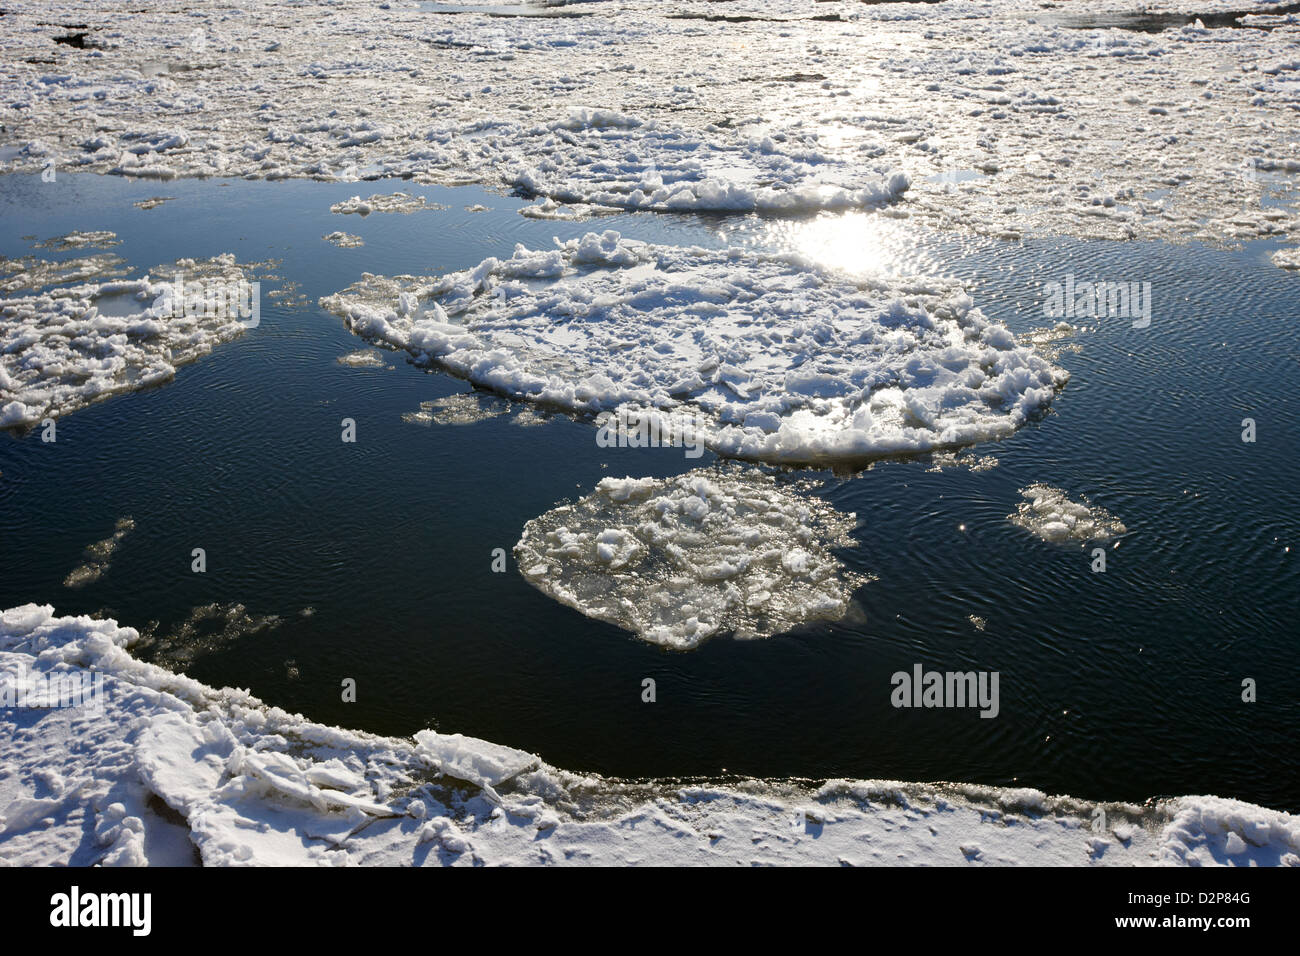 De gros morceaux de glace flottant sur la rivière Saskatchewan sud en hiver circulant dans le centre-ville de Saskatoon, Saskatchewan, Canada Banque D'Images